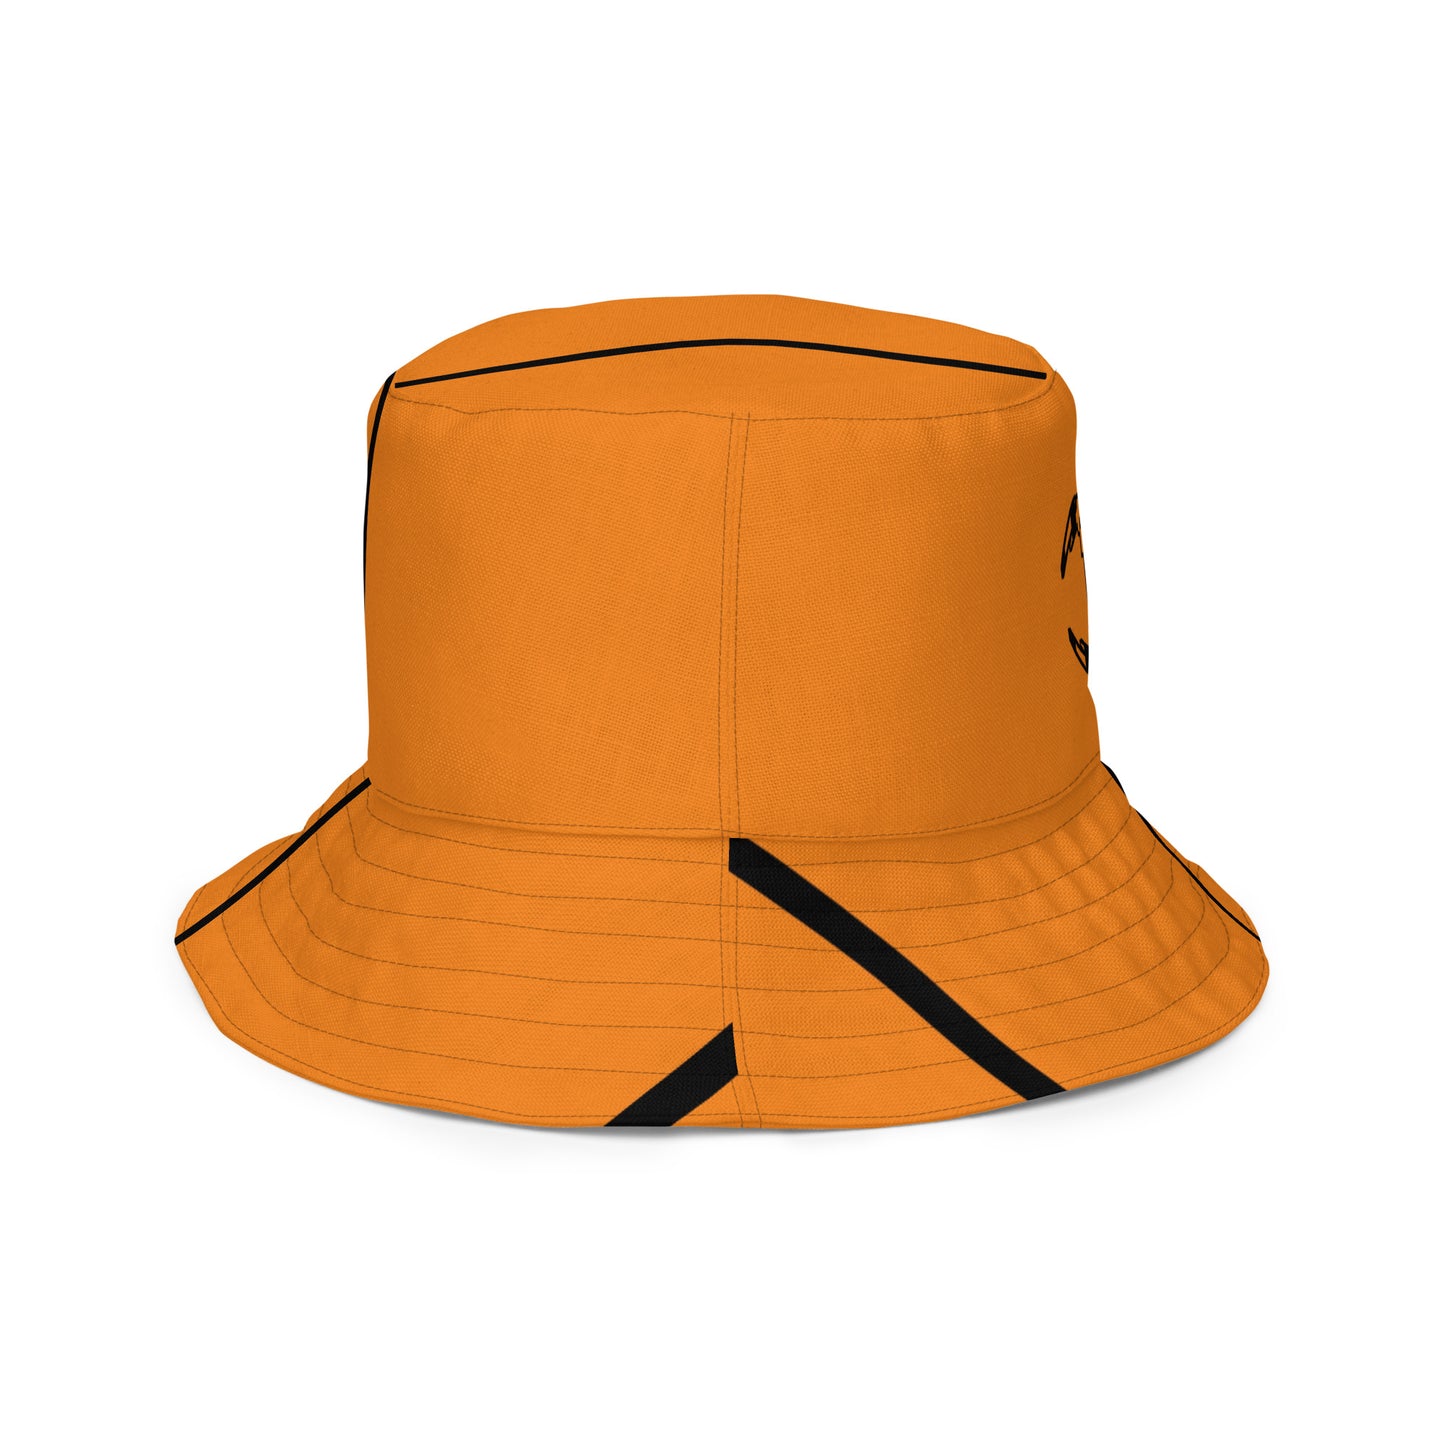 Bengals championship hat / B hat / Cincinnati Bengals Bucket Hat